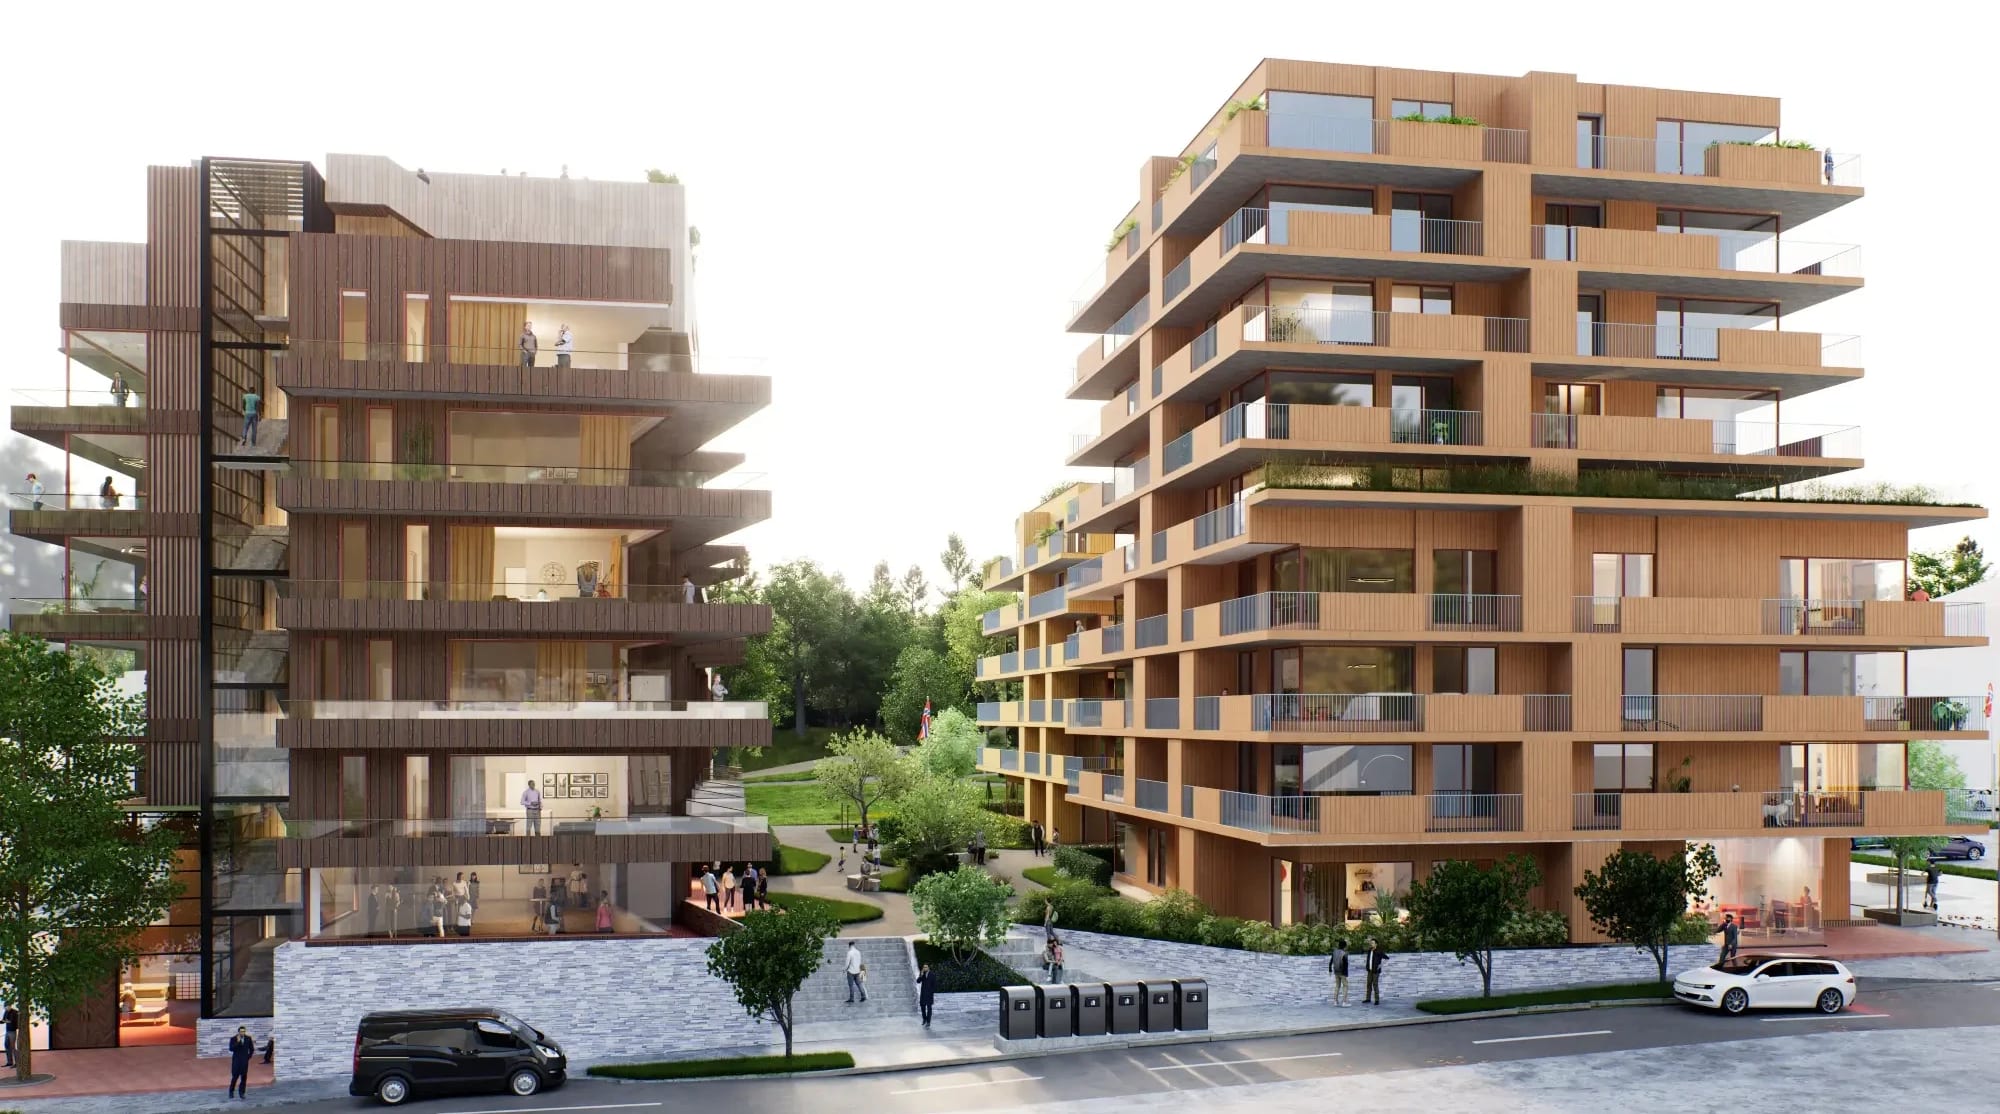 Sarpsborgs kommende boligprosjekt Parkkvartalet sett fra Kulåsgata